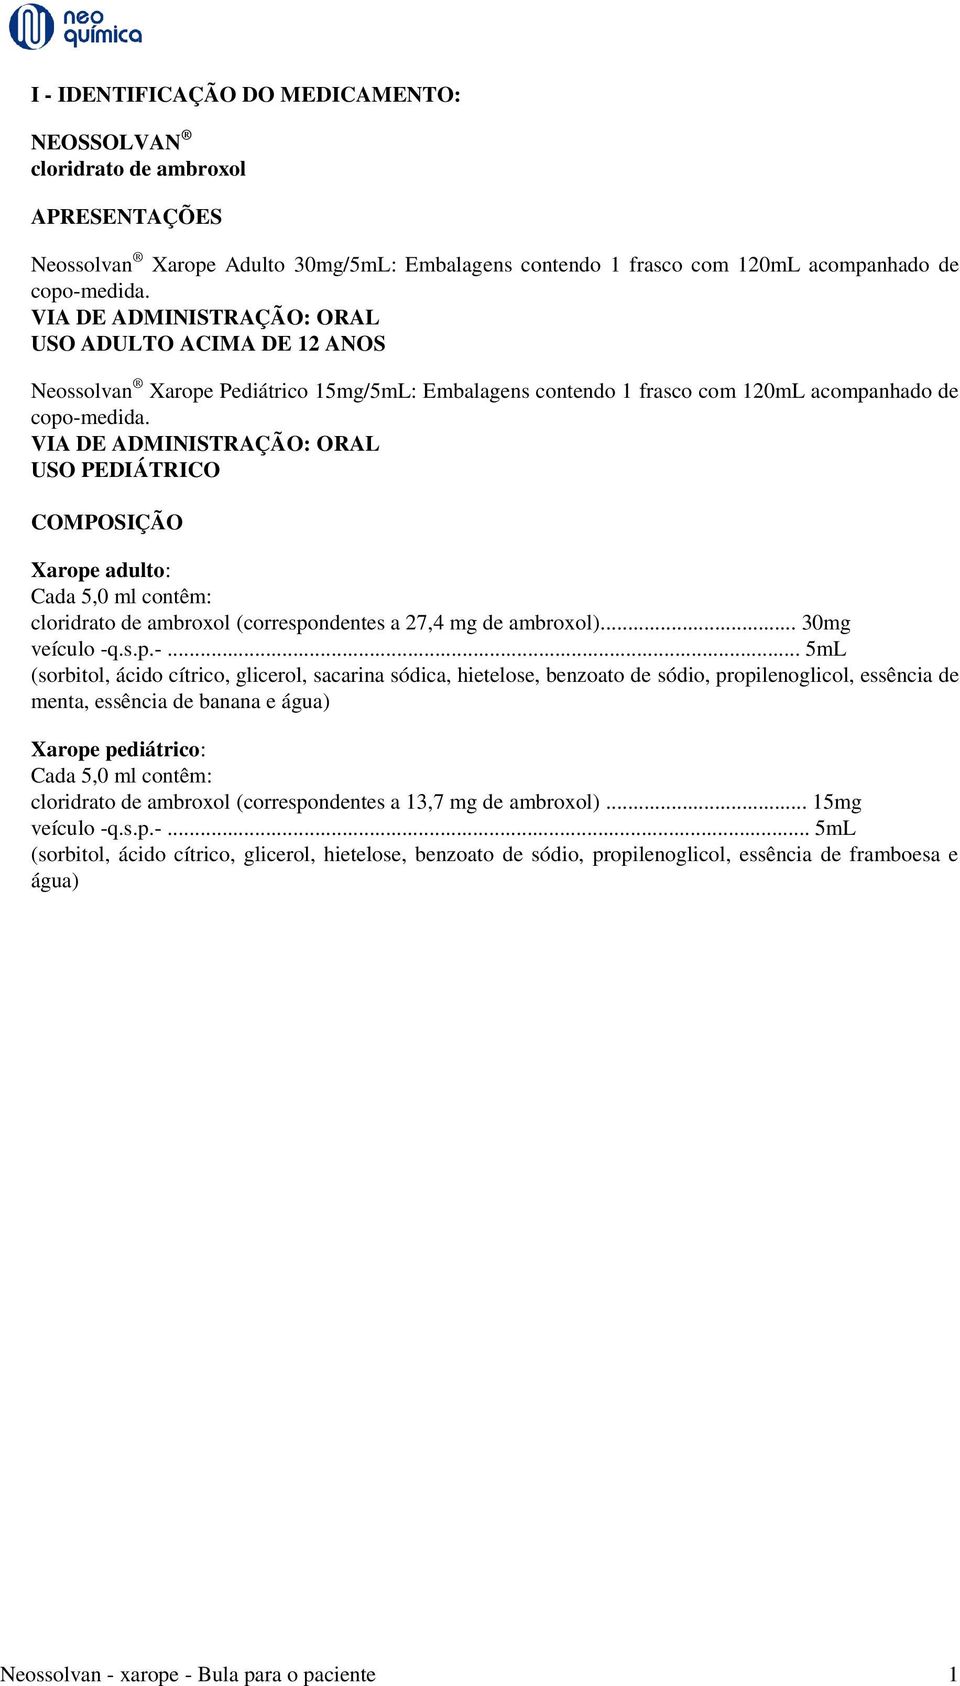 VIA DE ADMINISTRAÇÃO: ORAL USO PEDIÁTRICO COMPOSIÇÃO Xarope adulto: Cada 5,0 ml contêm: cloridrato de ambroxol (correspondentes a 27,4 mg de ambroxol)... 30mg veículo -q